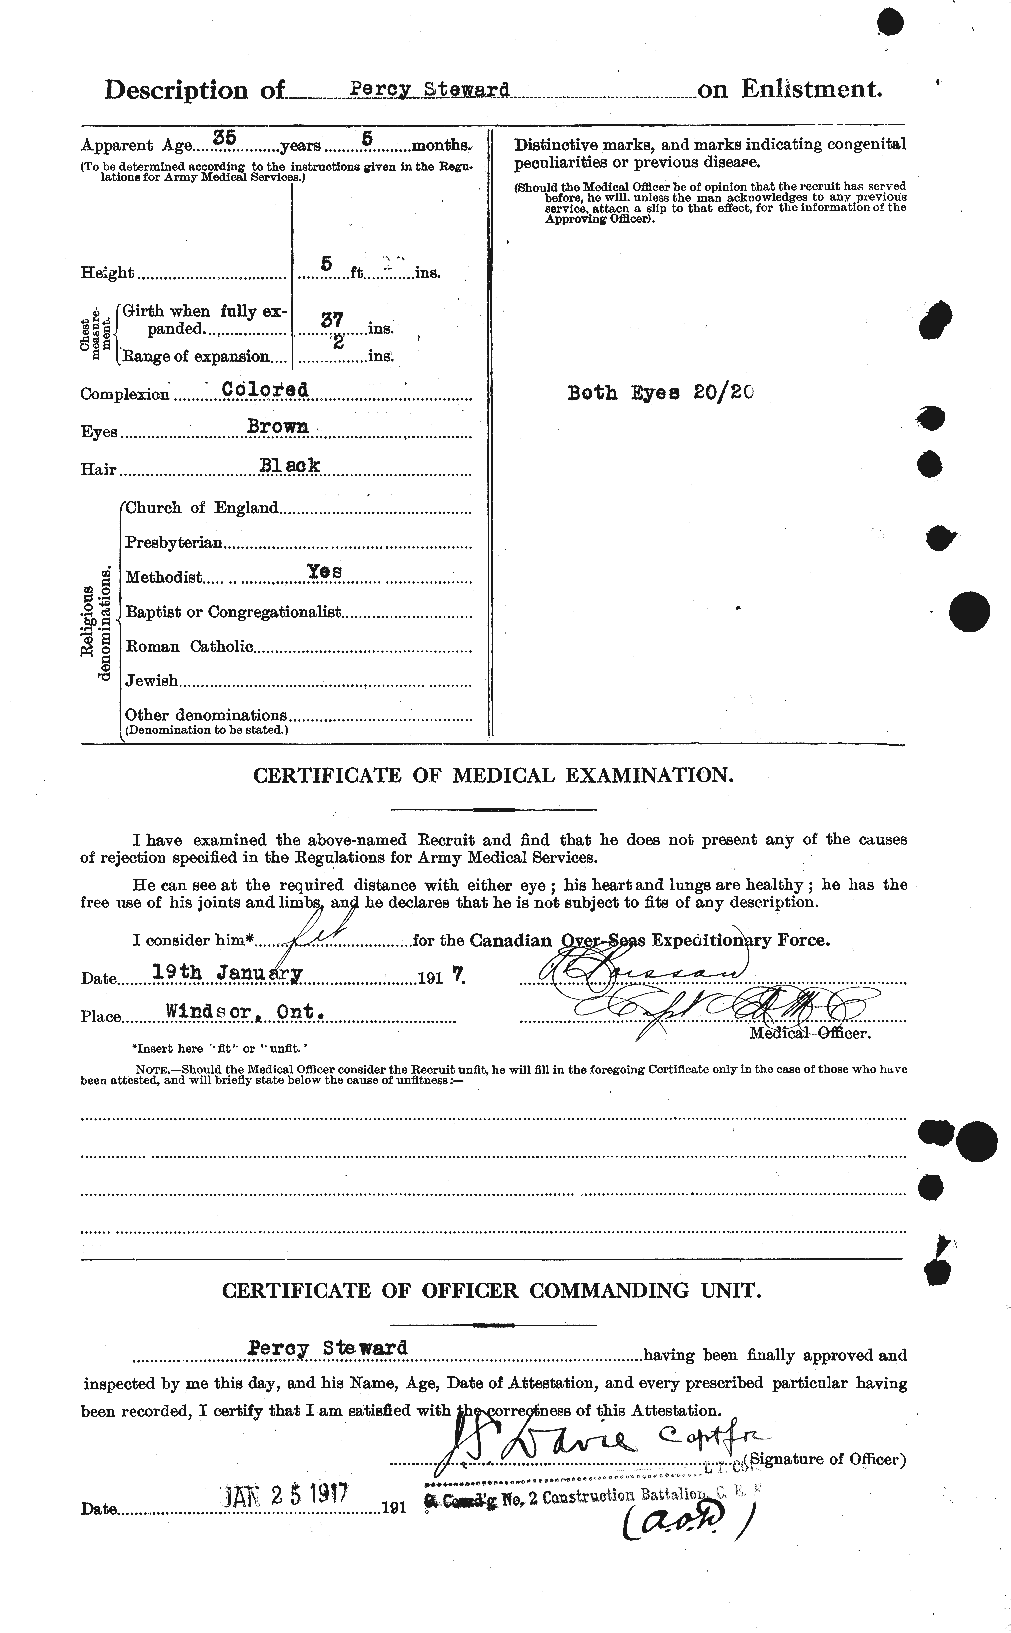 Dossiers du Personnel de la Première Guerre mondiale - CEC 118724b